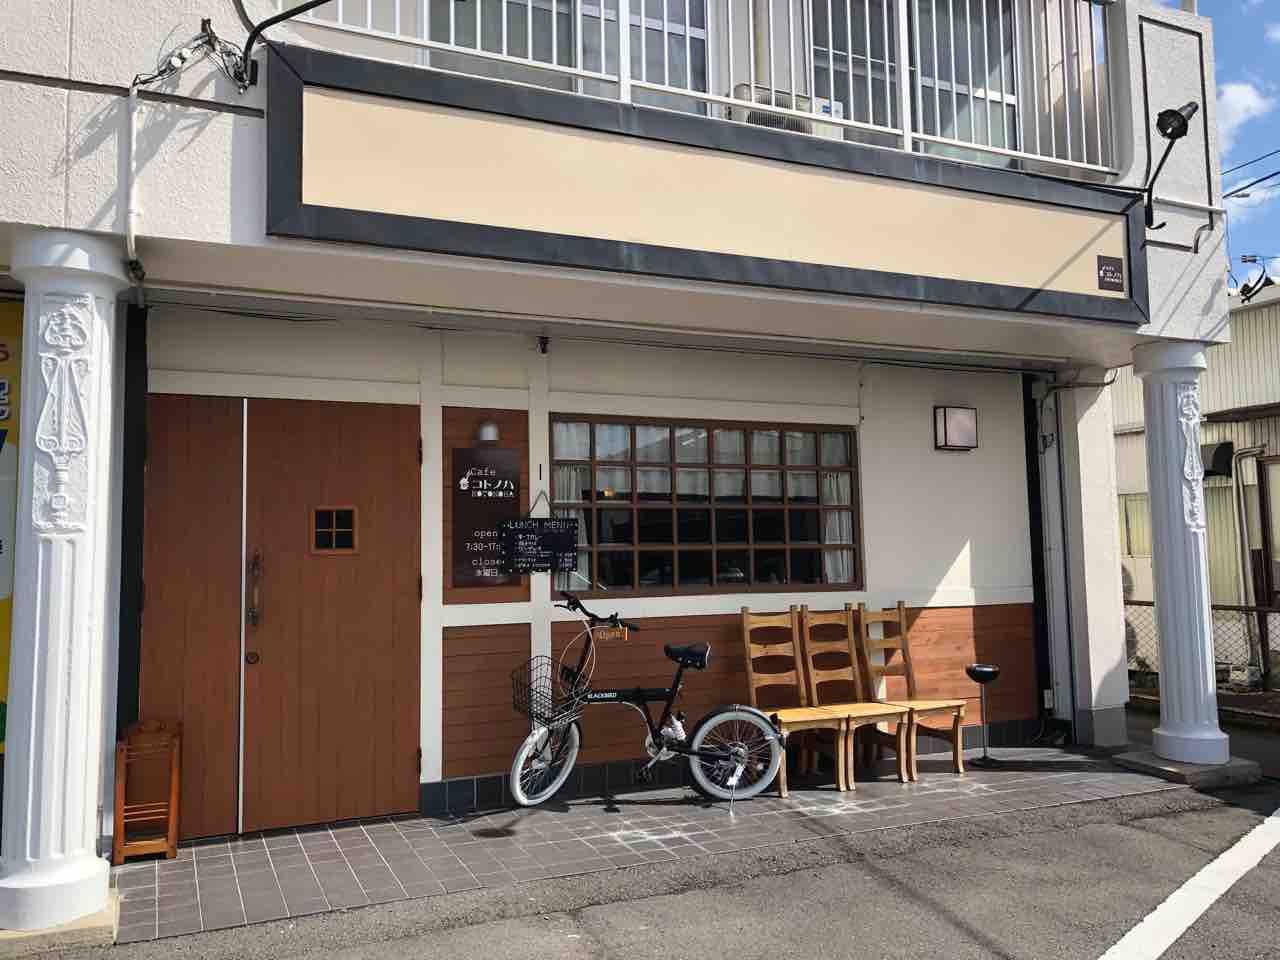 『Cafe コトノハ』店舗外観